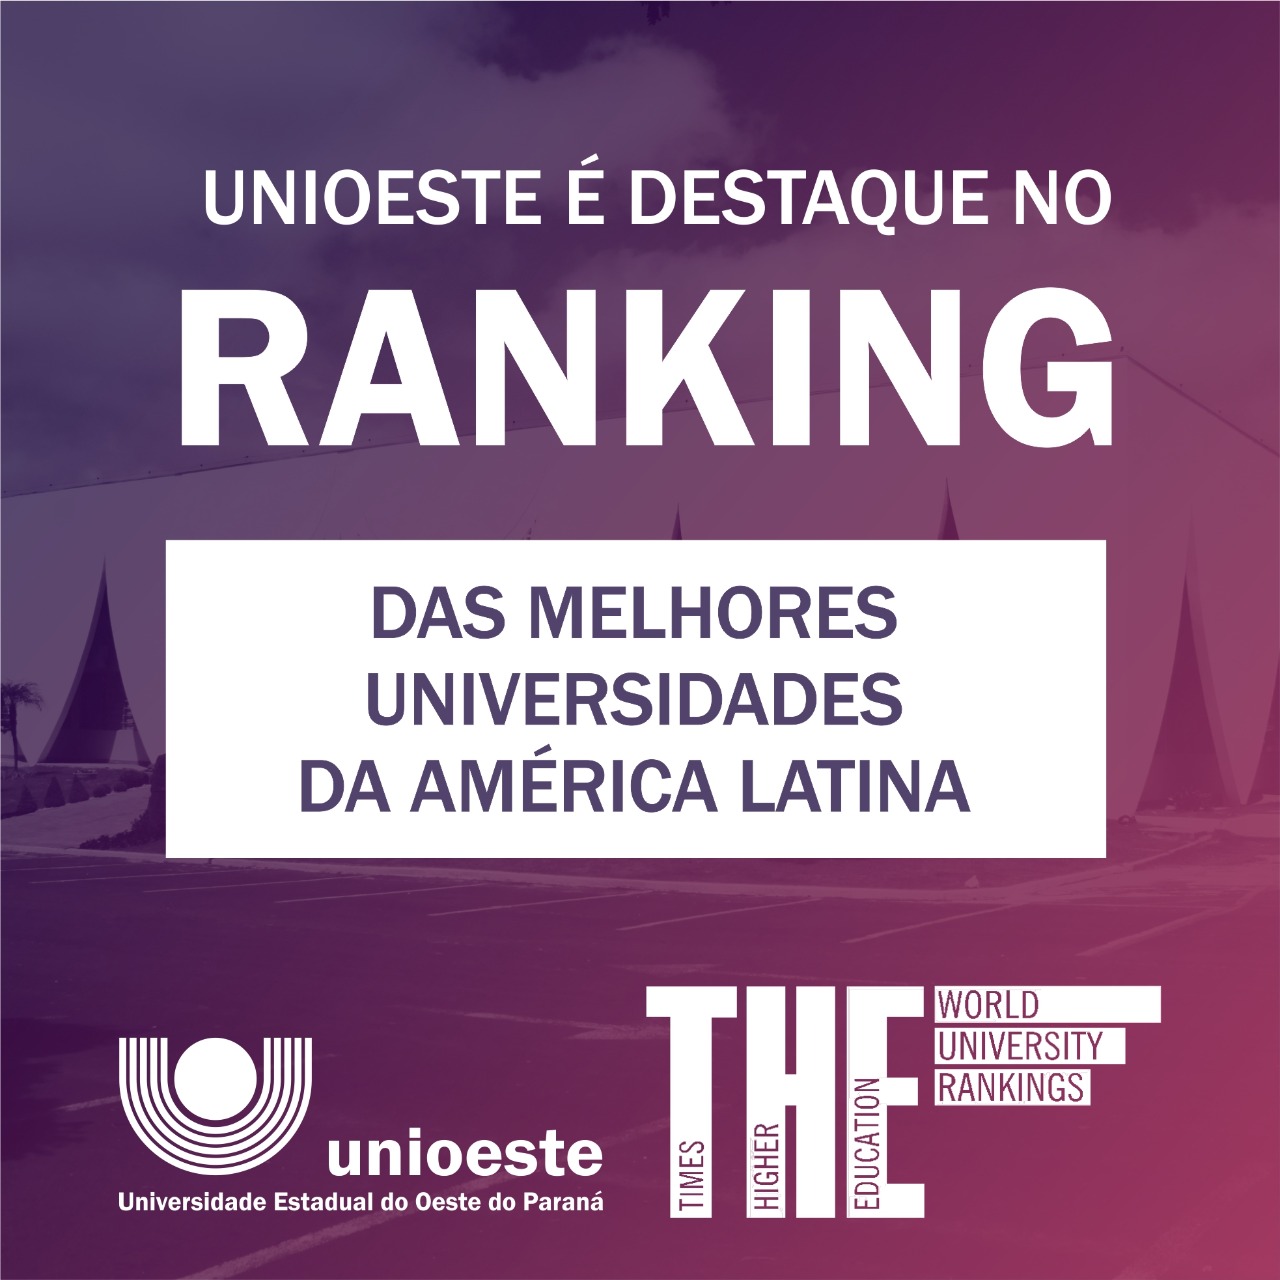 Ranking: Unioeste é destaque entre universidades da América Latina